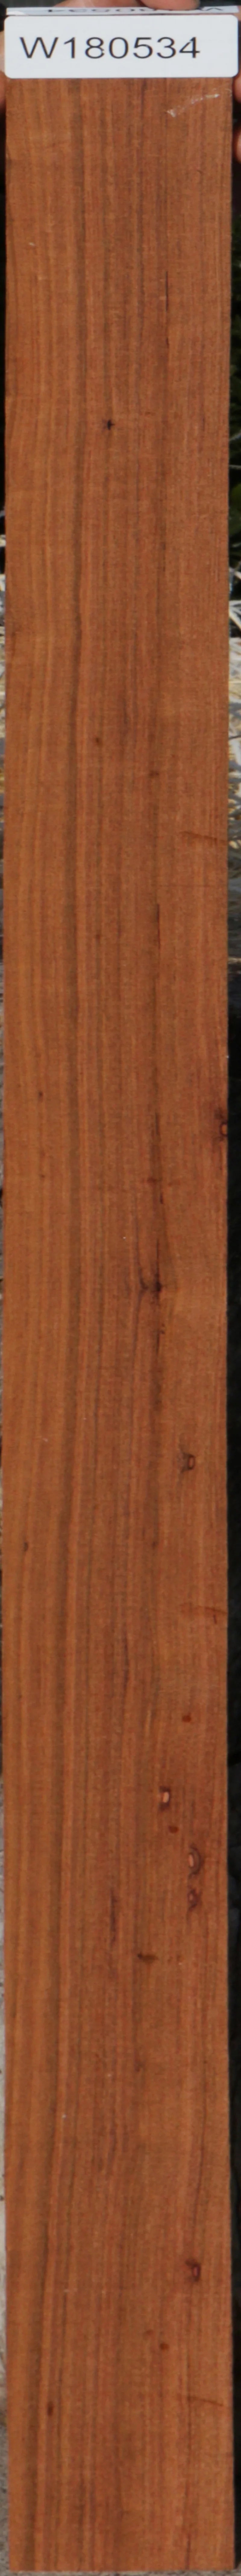 african mahogany vs genuine mahogany